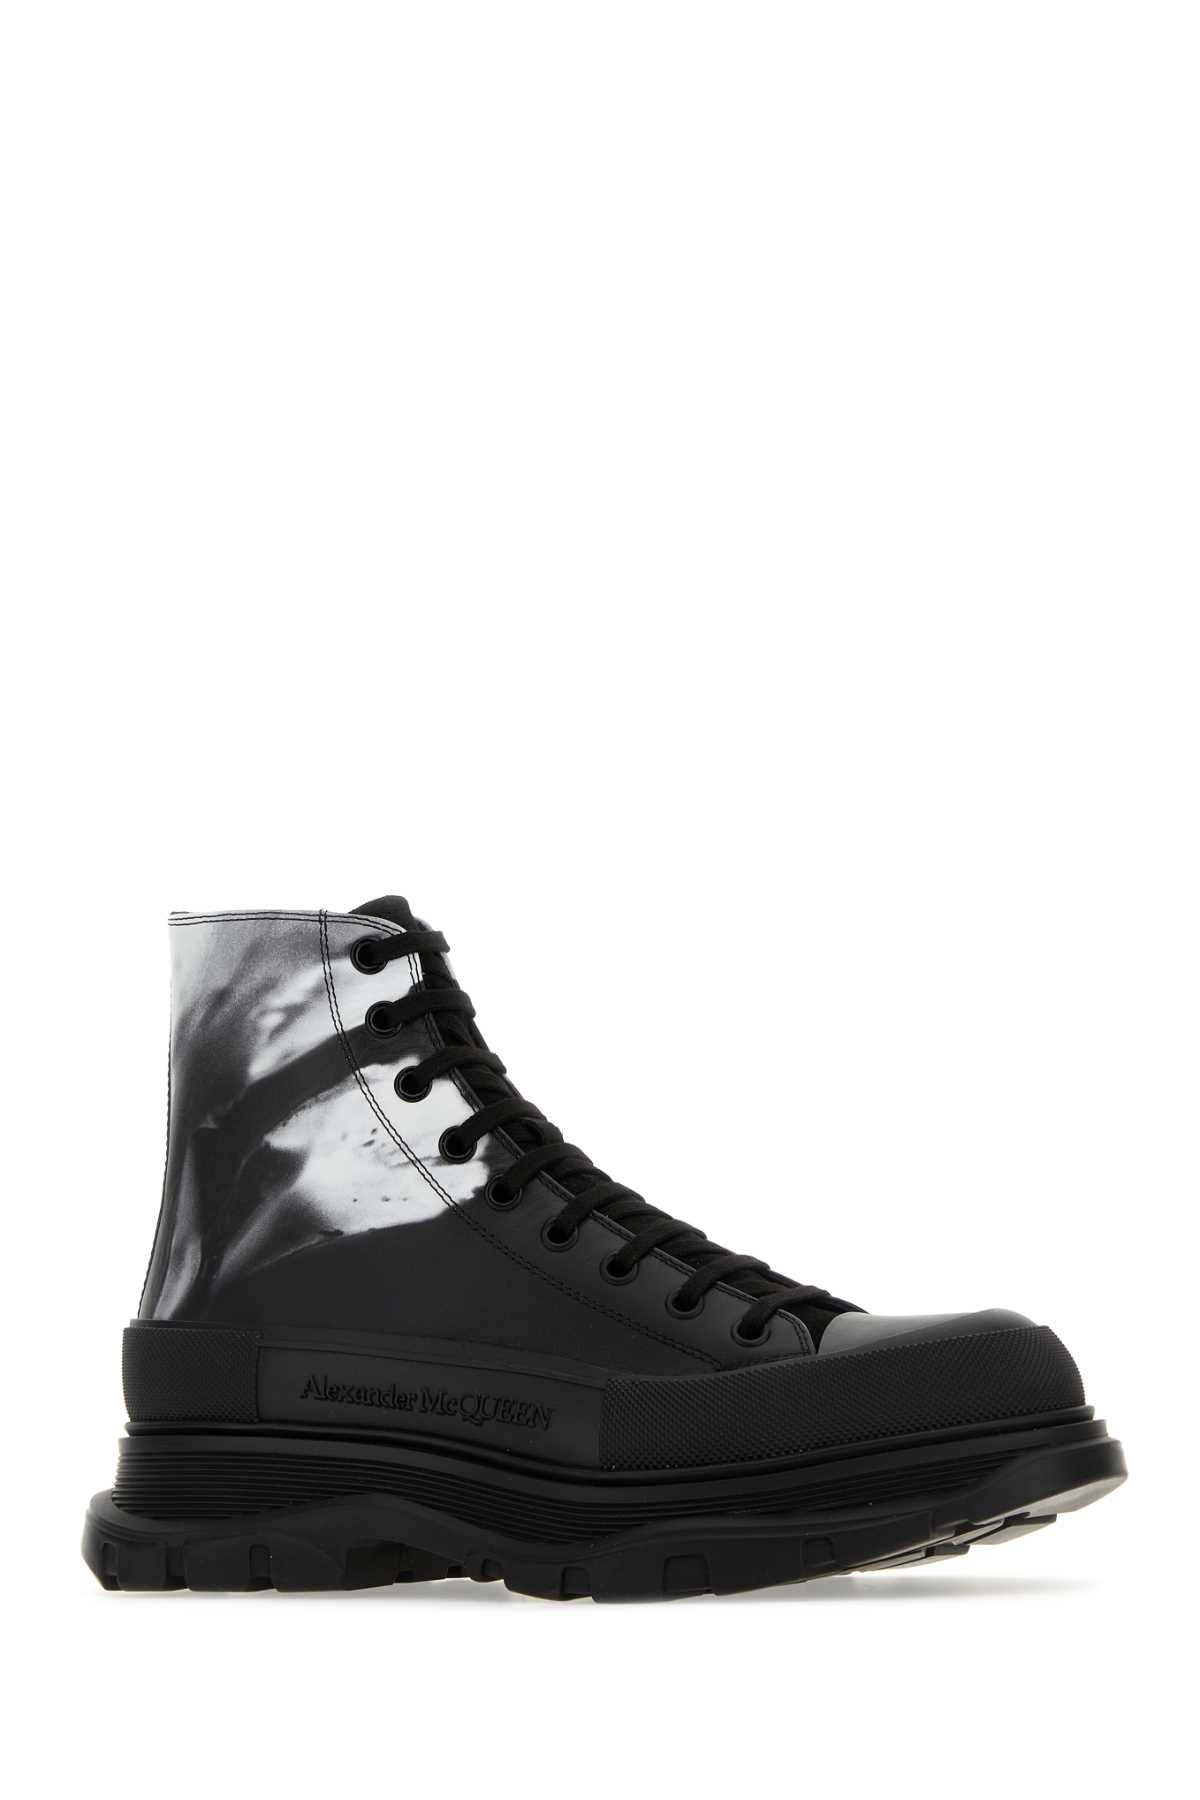 Alexander Mcqueen Printed Leather Tread Slick Sneakers In Blackwhite